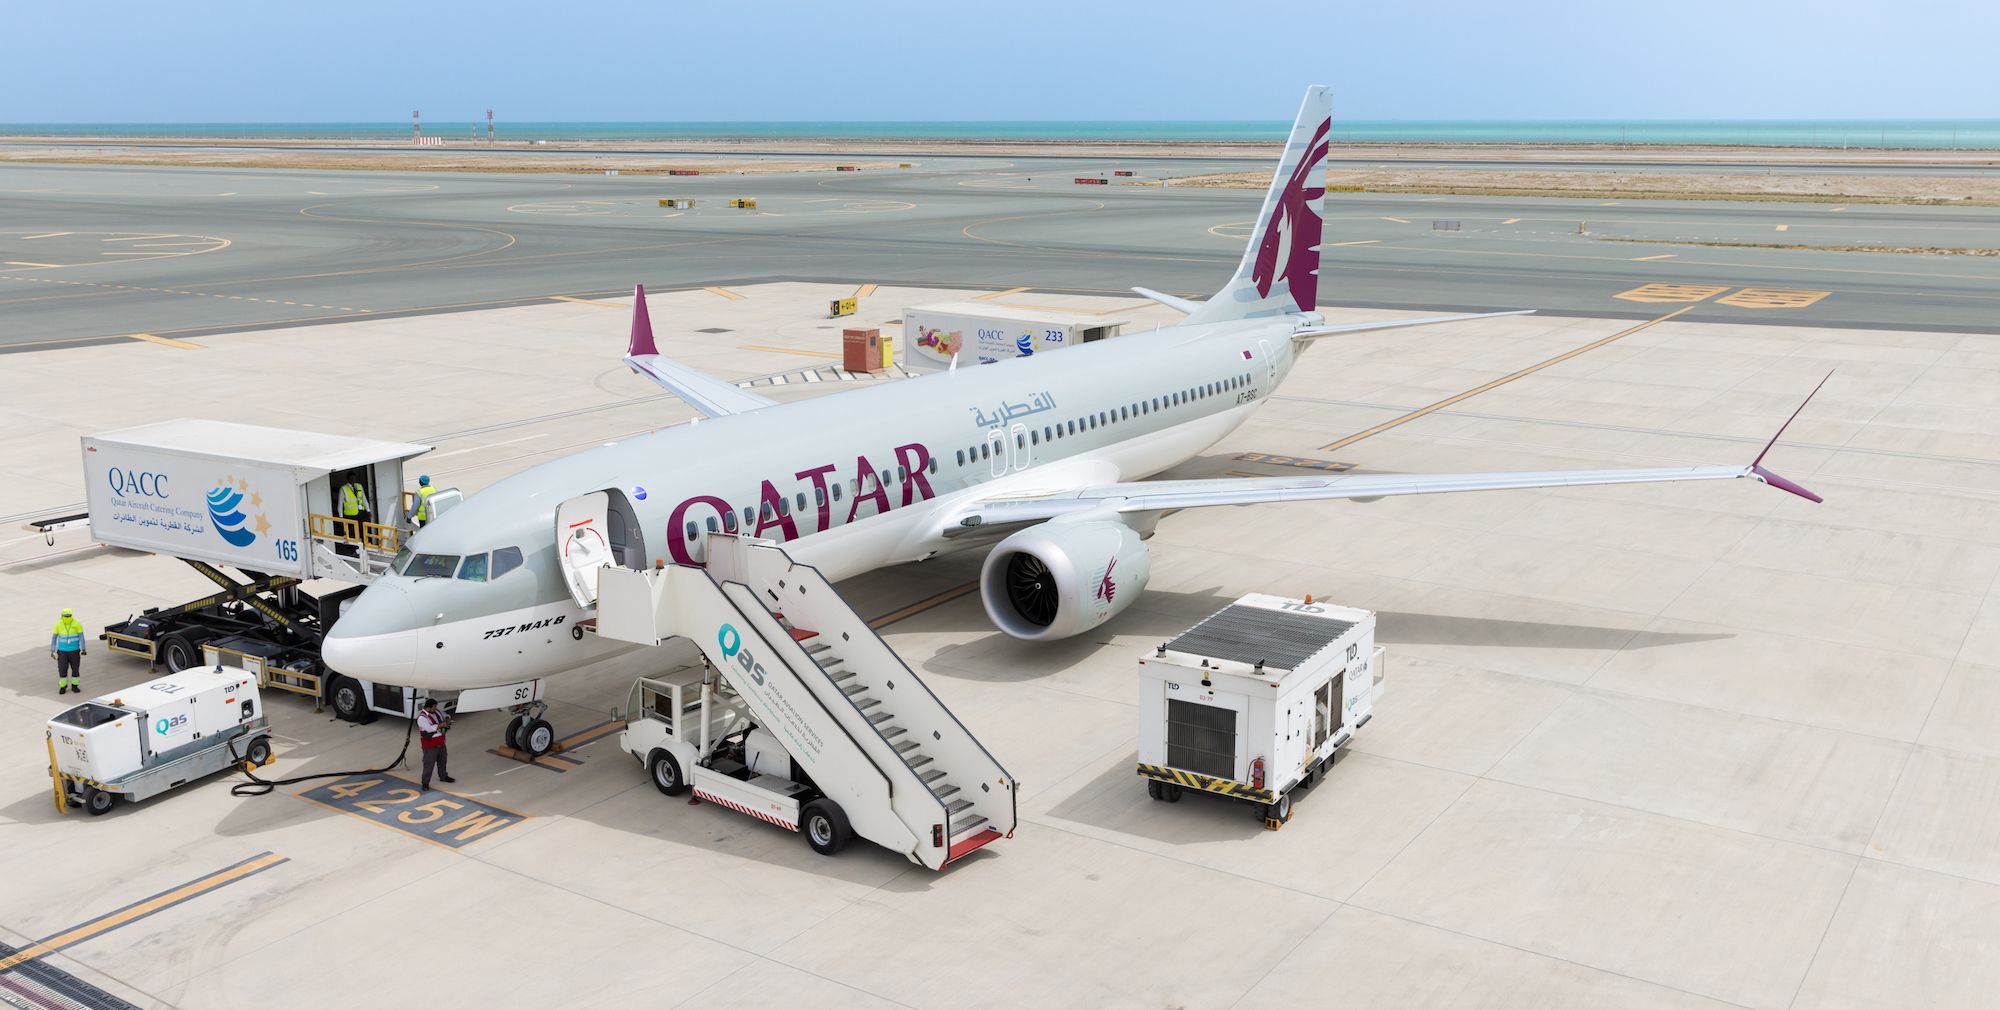 Qatar airways 737 MAX on tarmac